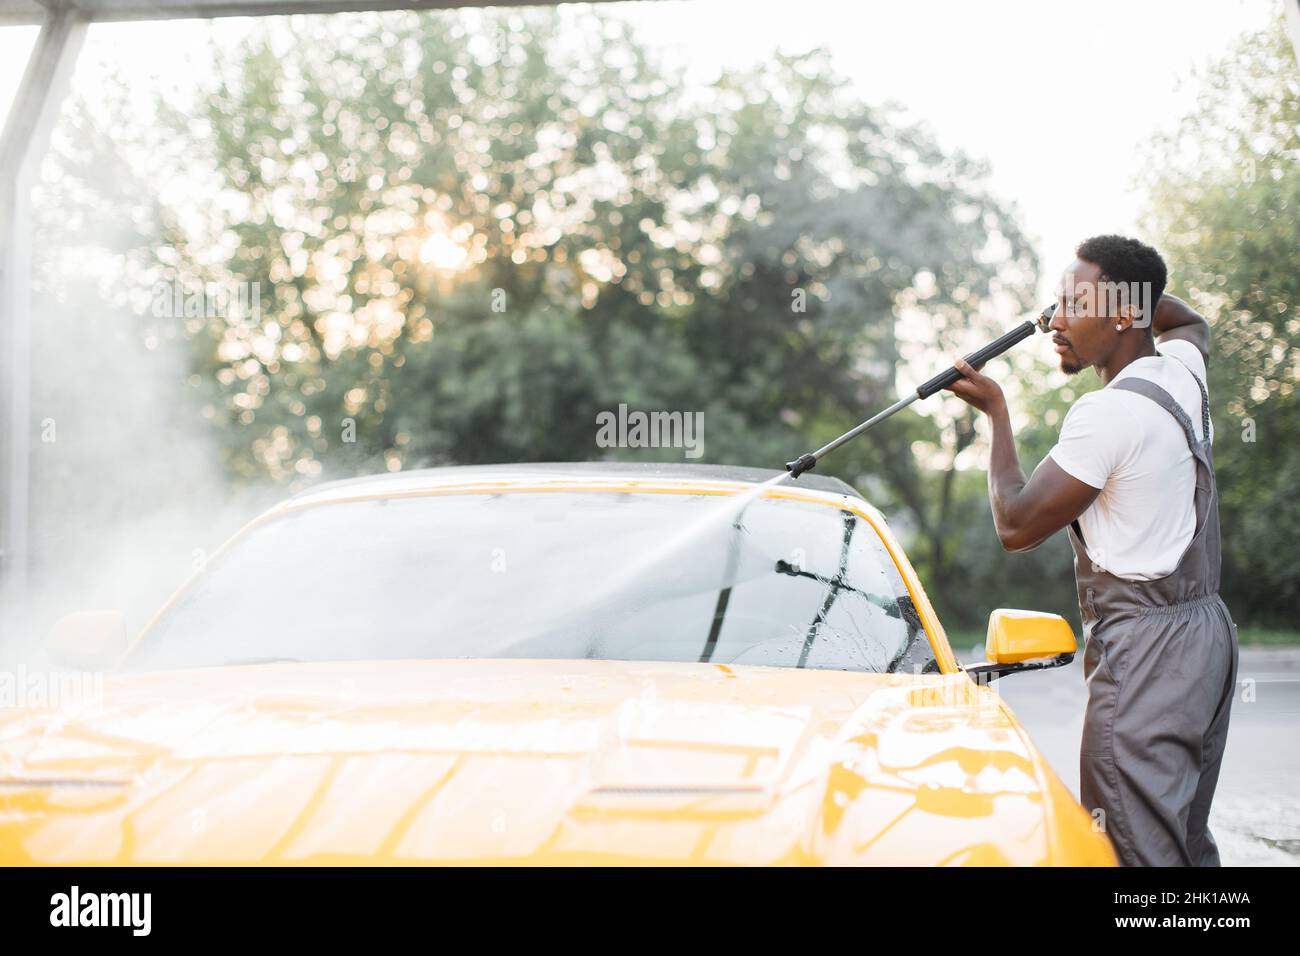 Lavage manuel de la voiture.Beau jeune homme africain lavant son véhicule jaune de luxe avec pompe à eau haute pression à l'automobile de nettoyage libre-service à l'extérieur. Banque D'Images